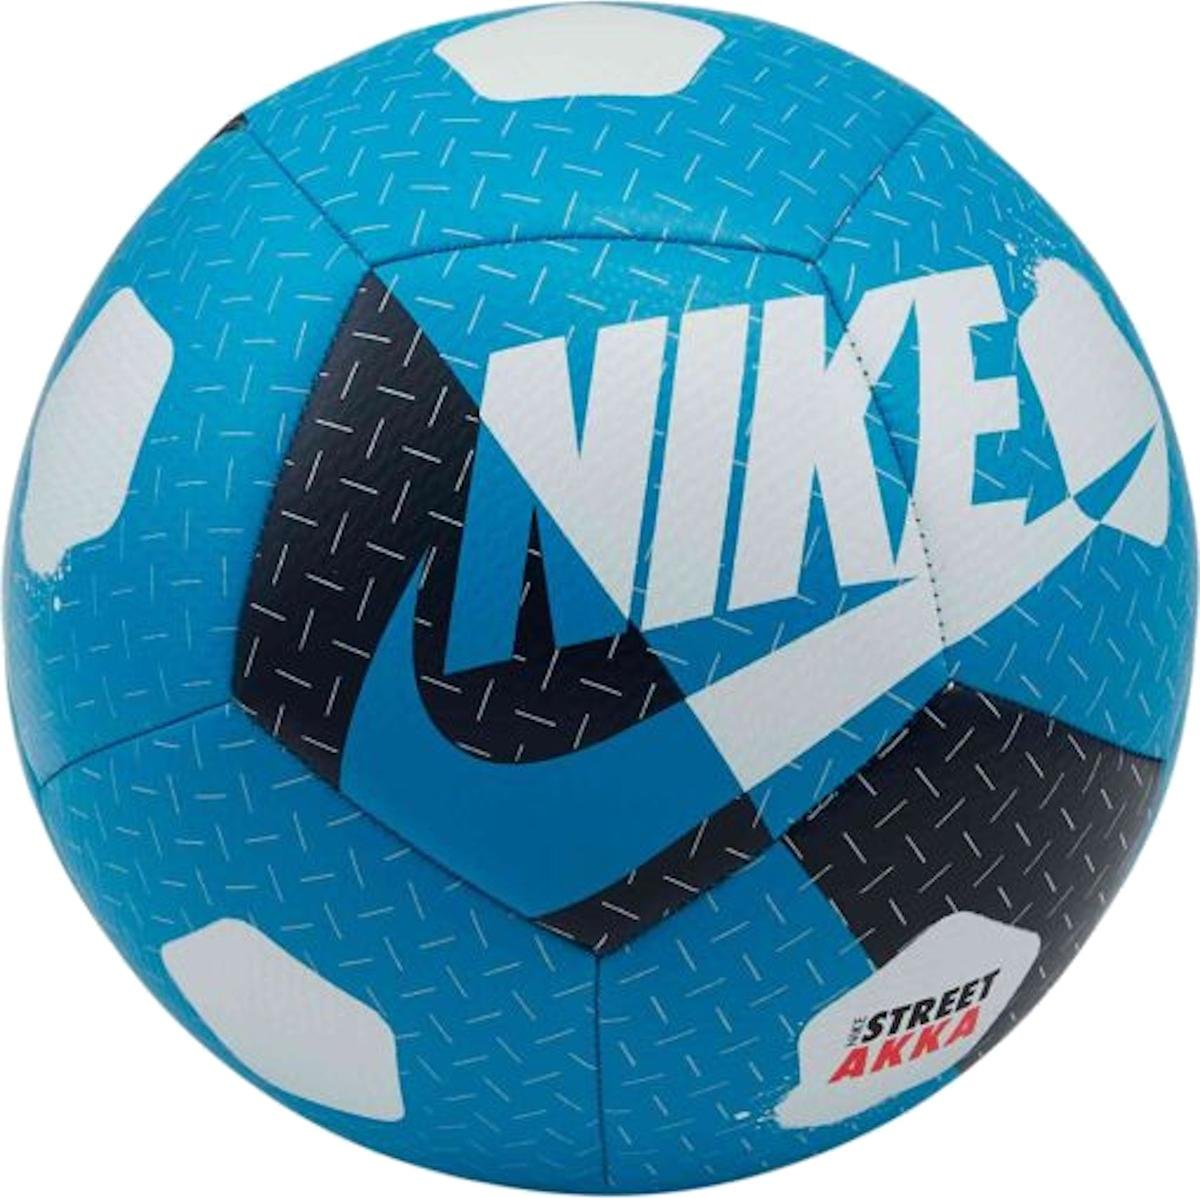 Balón Nike NK STREET AKKA